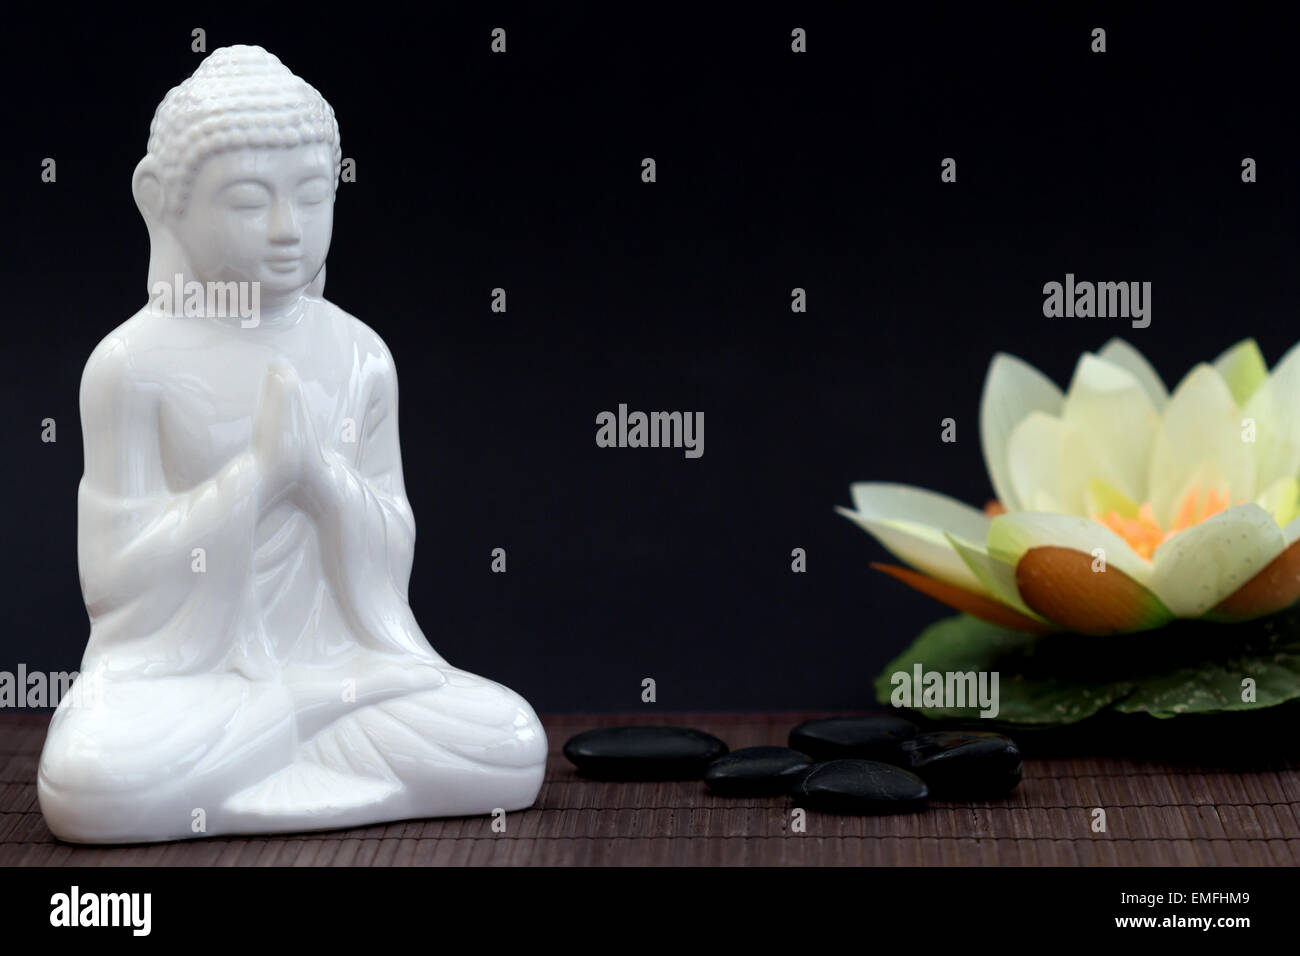 Figura blanca en pose de meditación con guijarros y agua lilly en fondo borroso Foto de stock